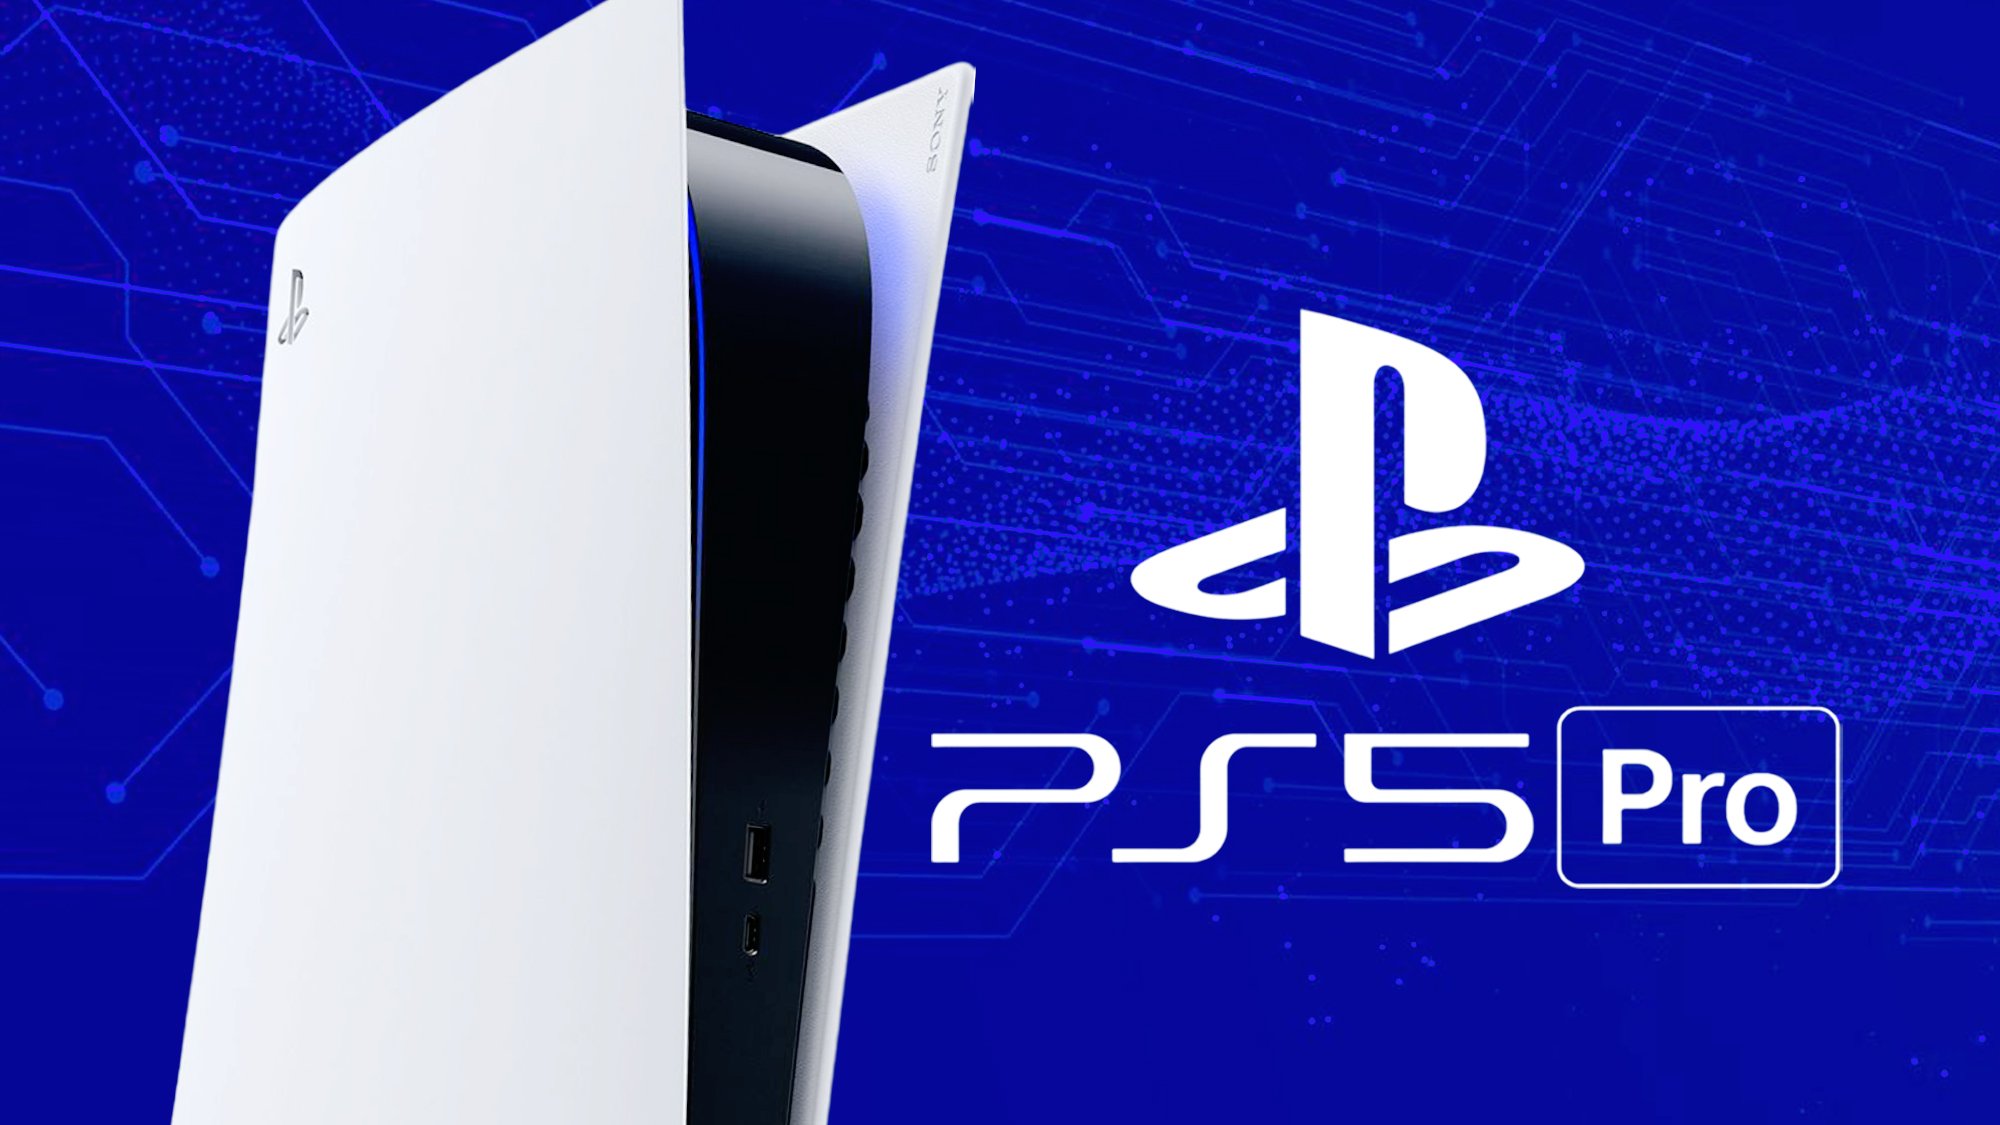 PS5 Pro : tout a leaké, ce sera bien un monstre de puissance !